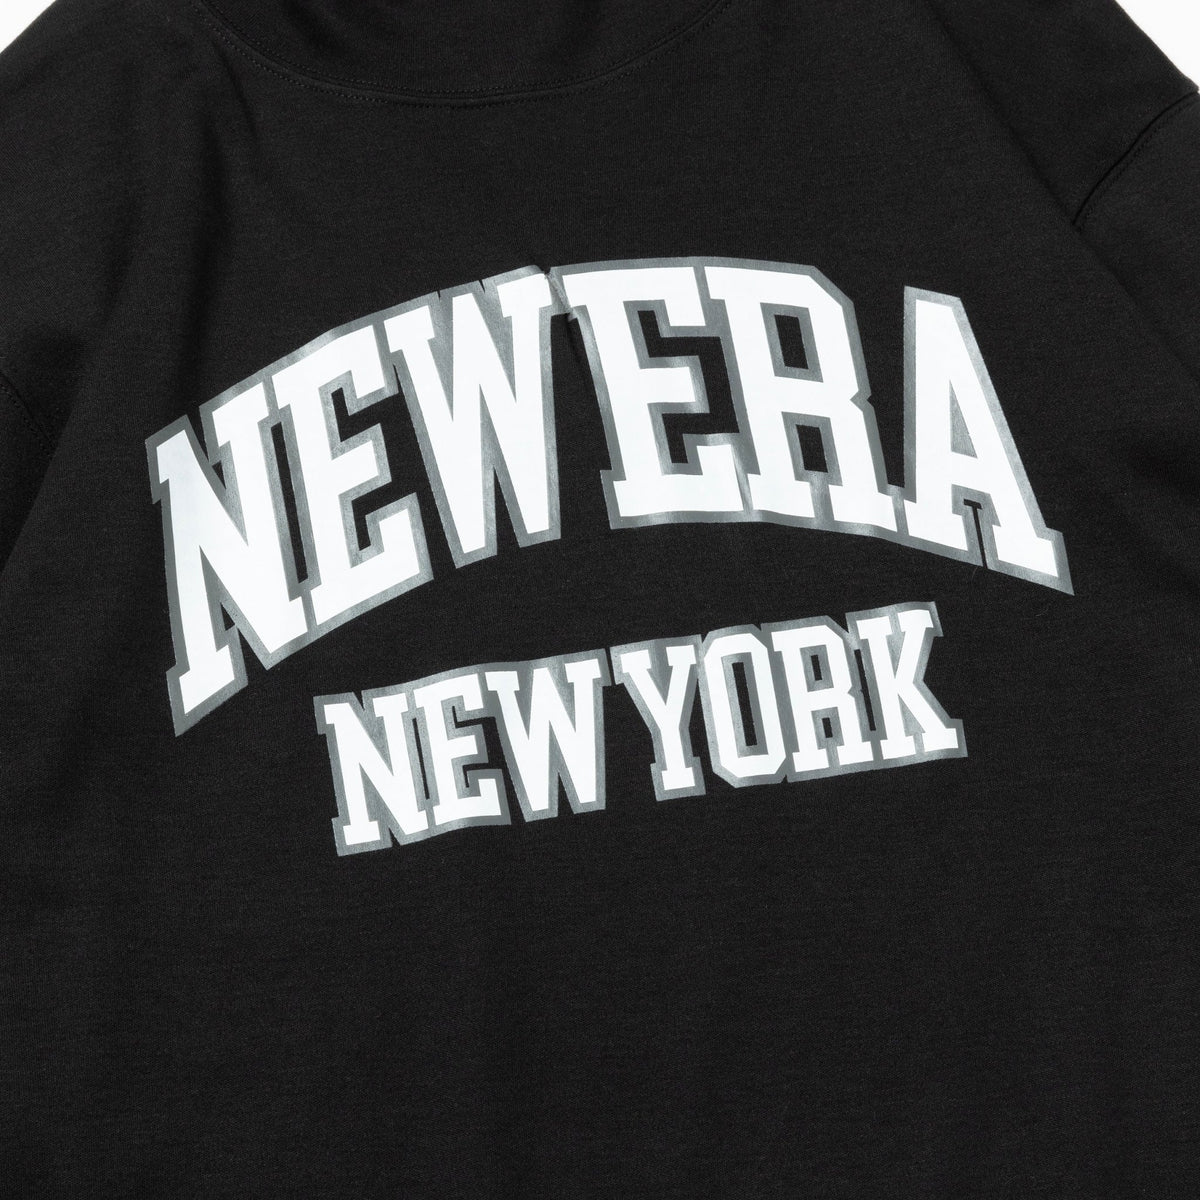 【ゴルフ】 ハイカラー 長袖 ウォーム Tシャツ NEW ERA NEW YORK ウィンターコットン ブラック